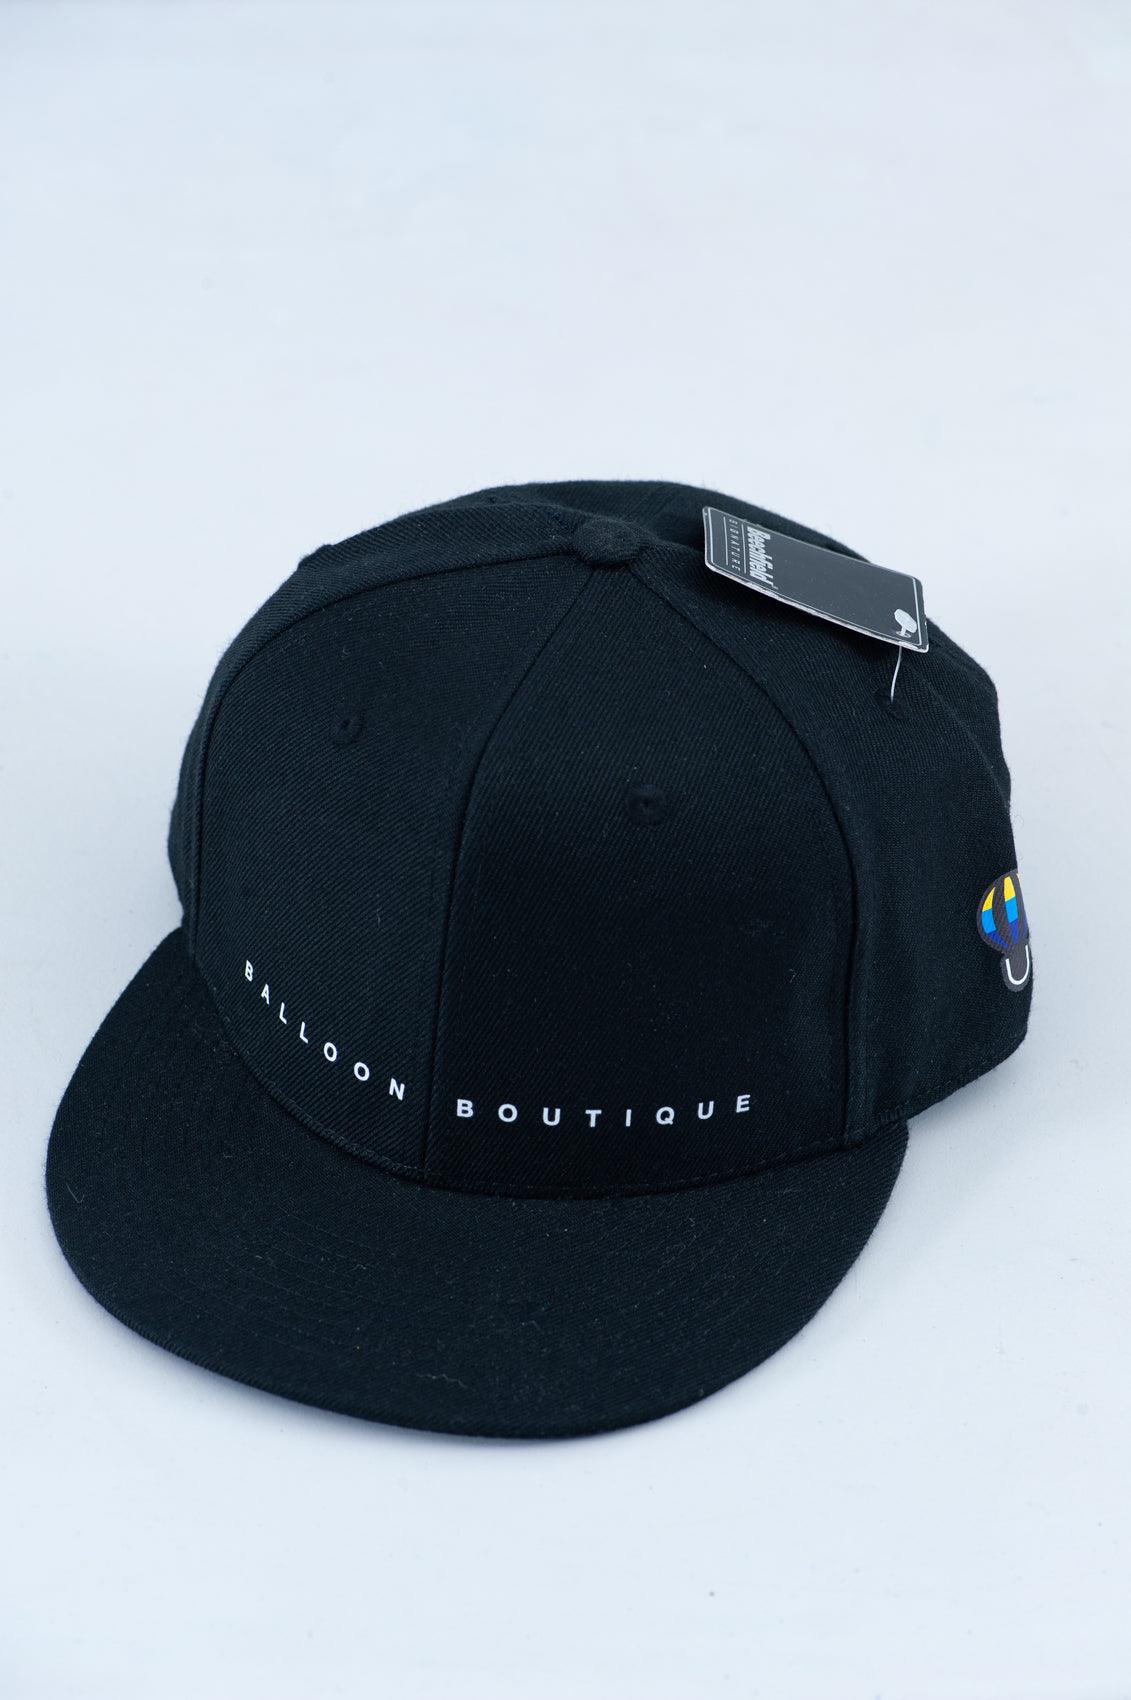 Black Caps - Sky Amazons Boutique